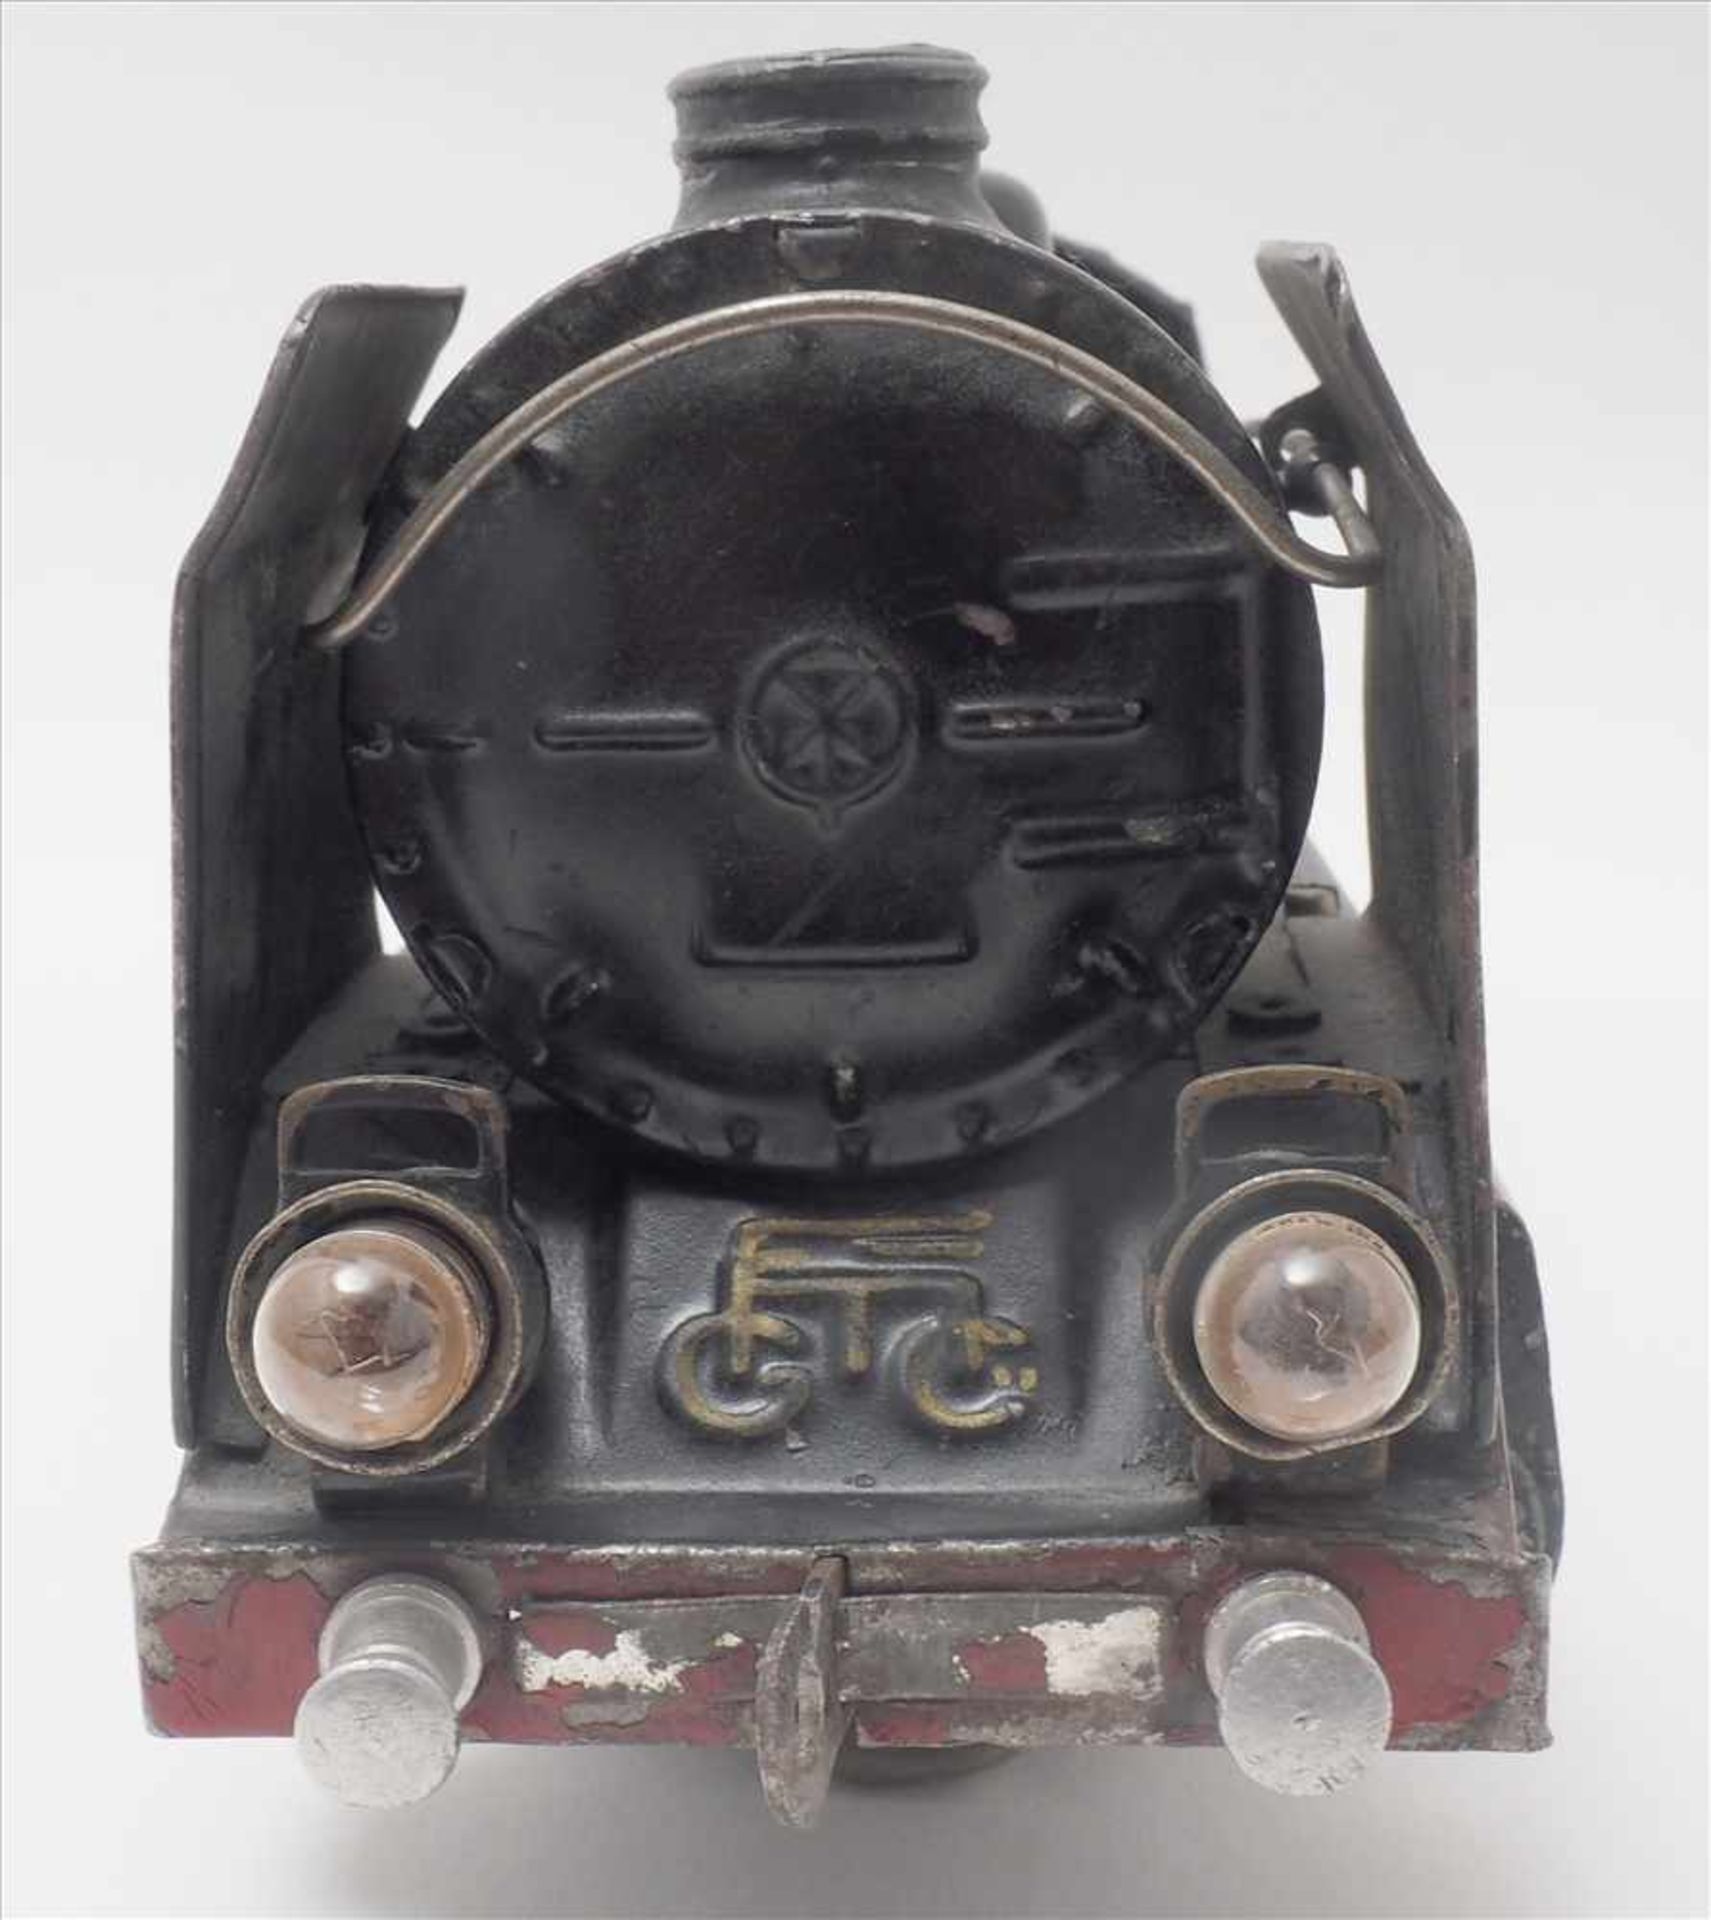 Märklin DampflokSpur 0, 1930-er Jahre. Elektroantrieb. Zweiachsige Dampflokomotive mit passendem - Bild 4 aus 9